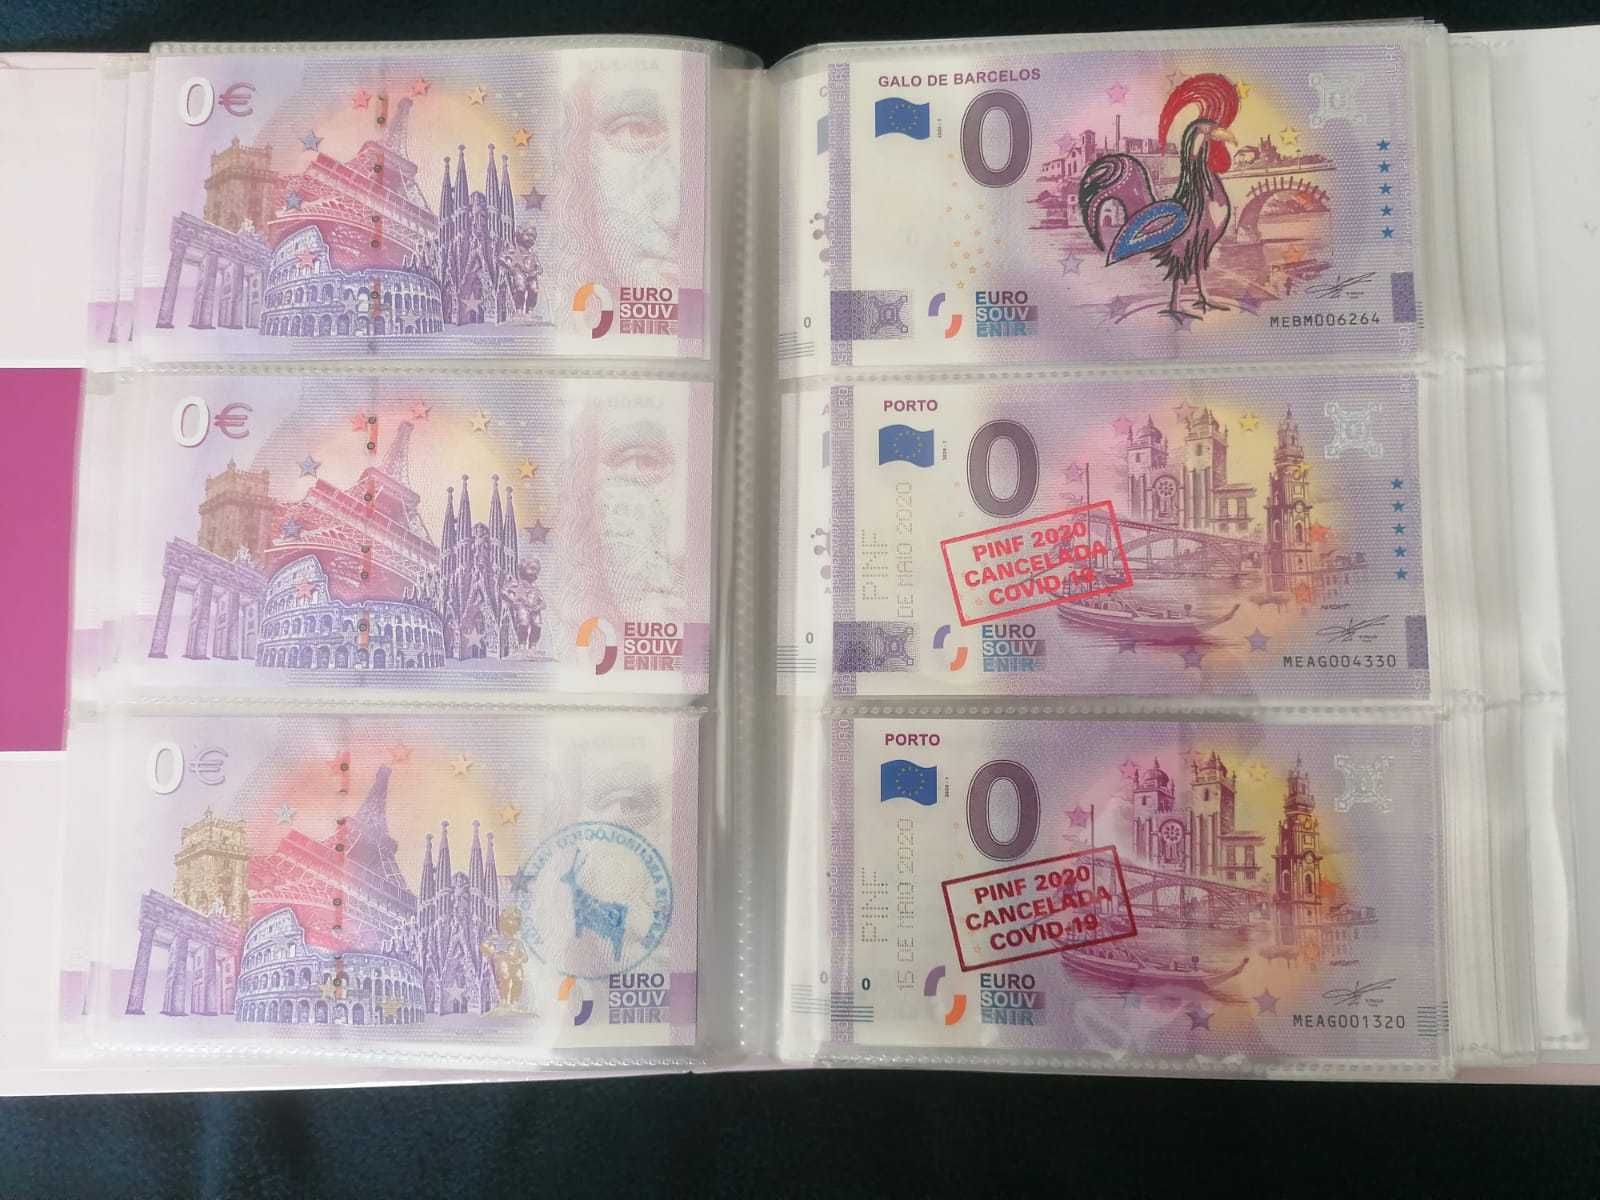 Souvenir Notas "0 euros" Variantes Selos Impressos!